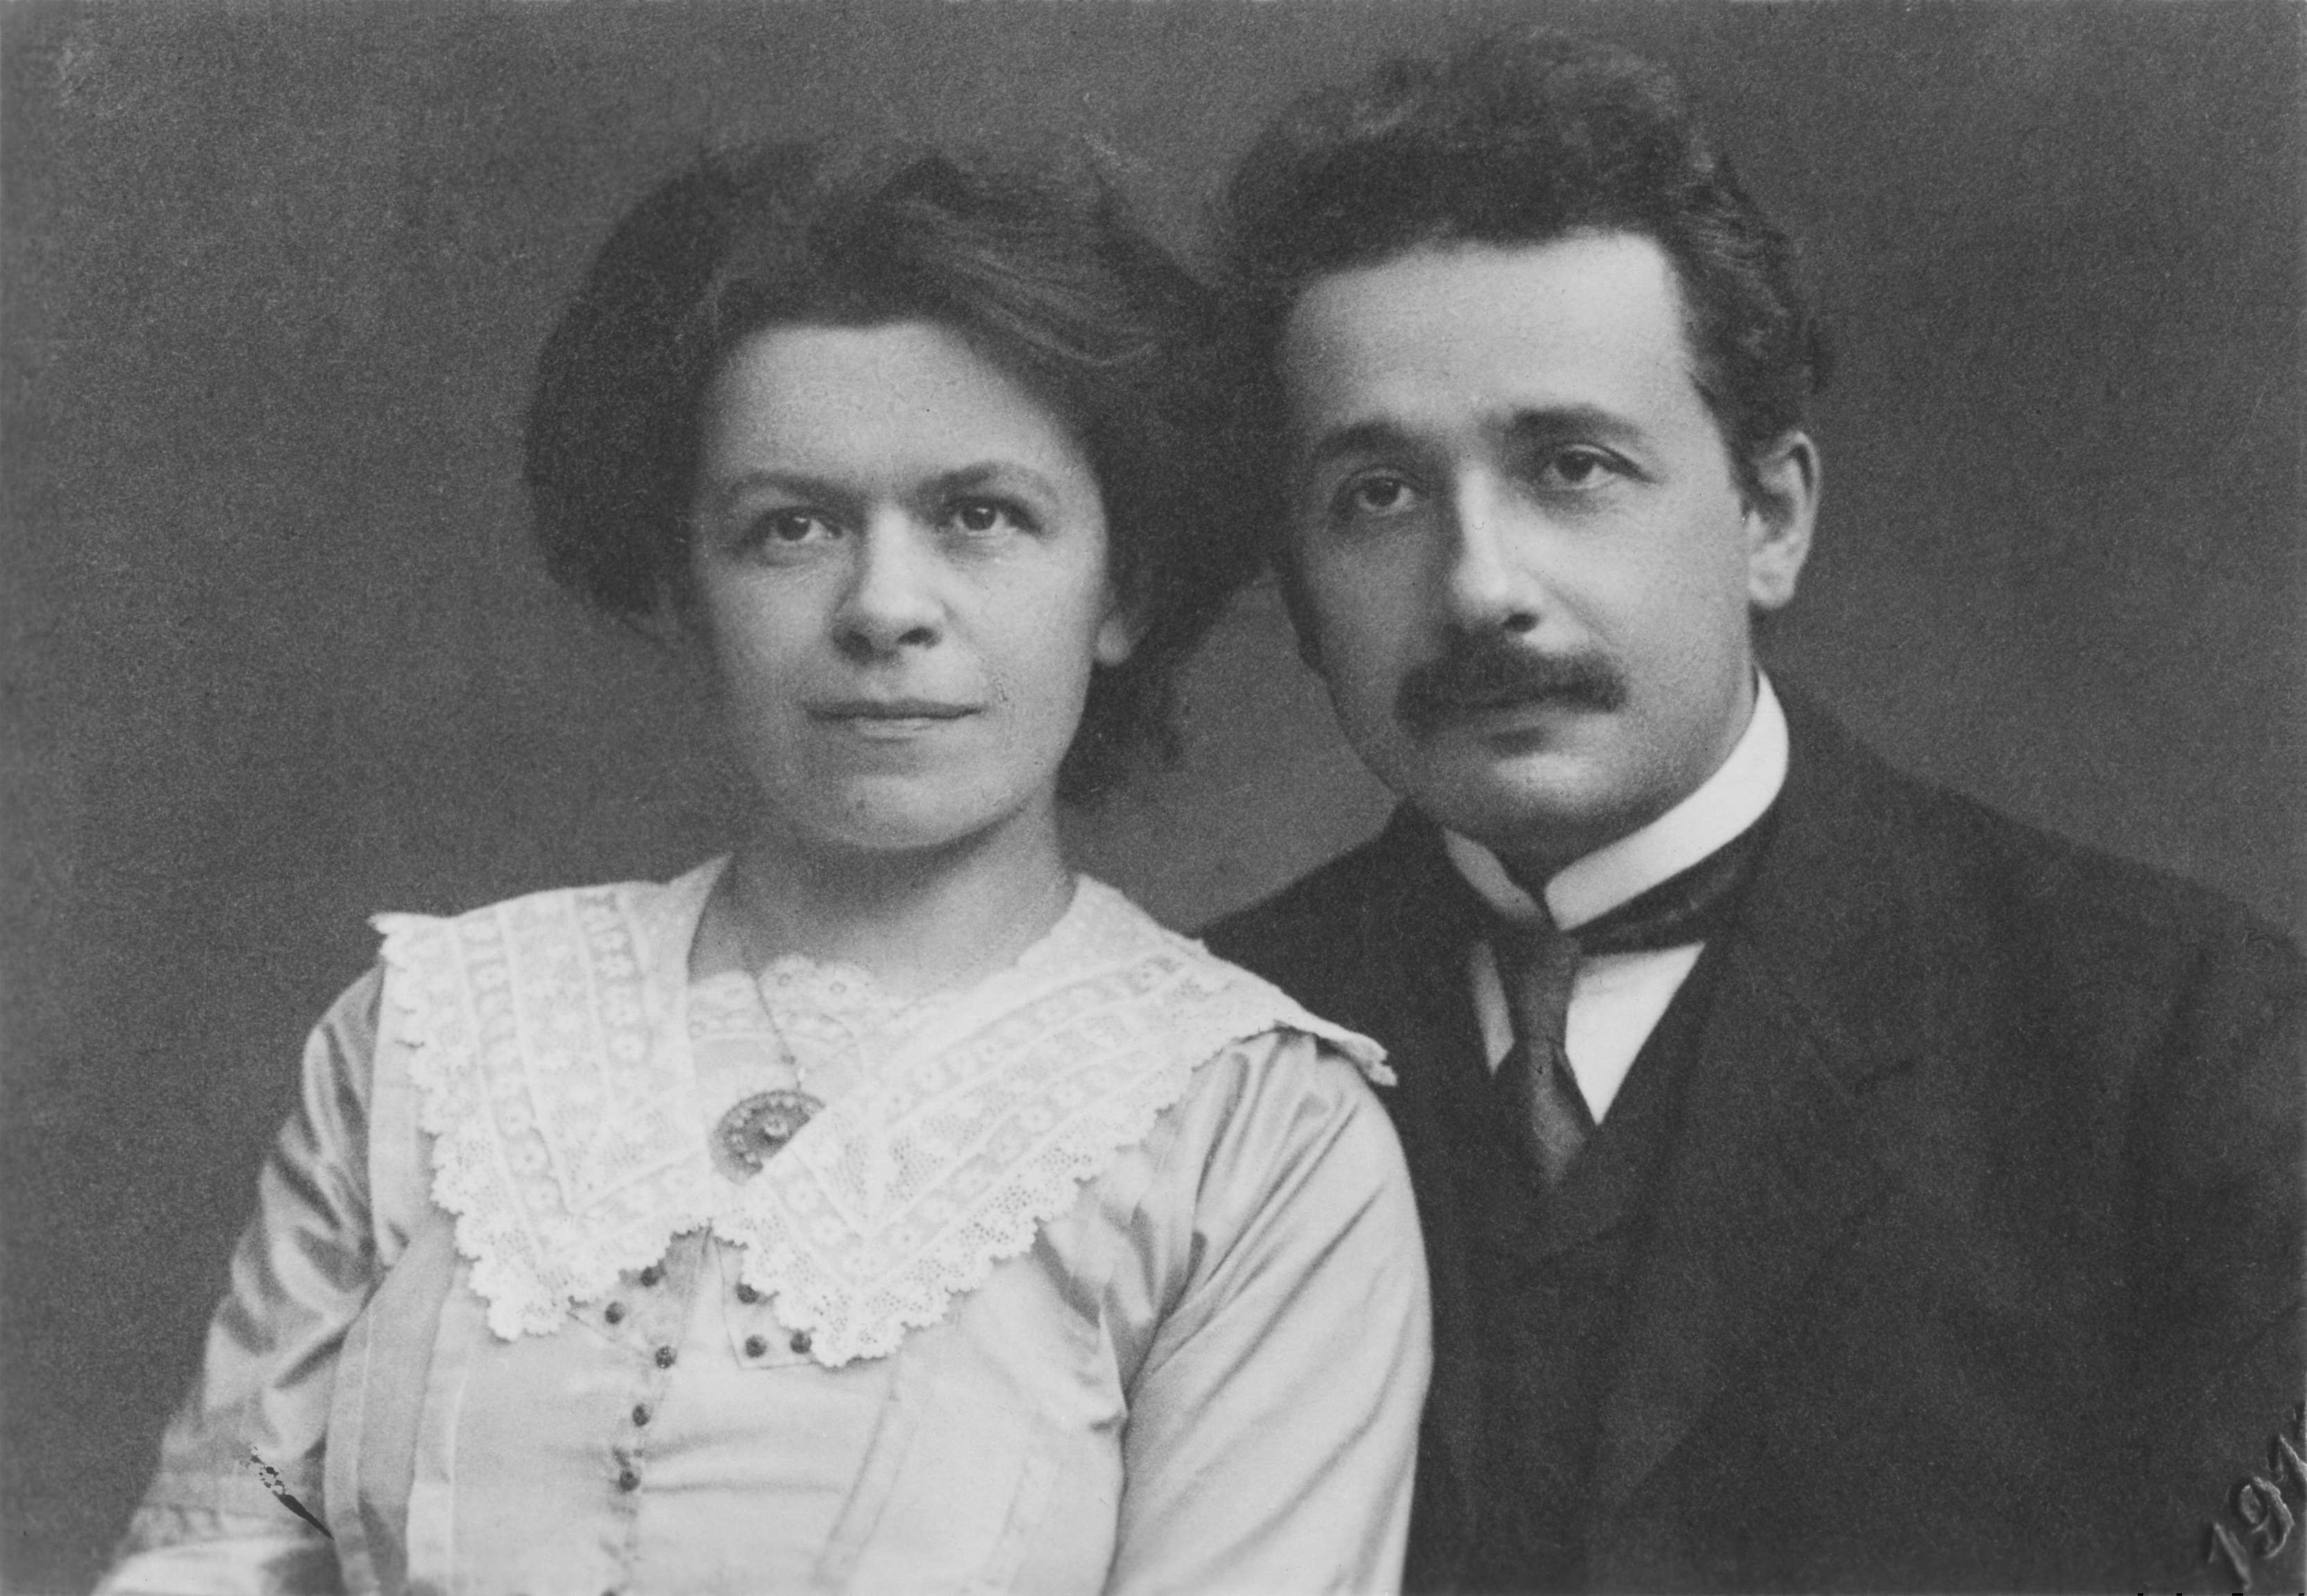 Albert and Mileva Marić Einstein, 1912.